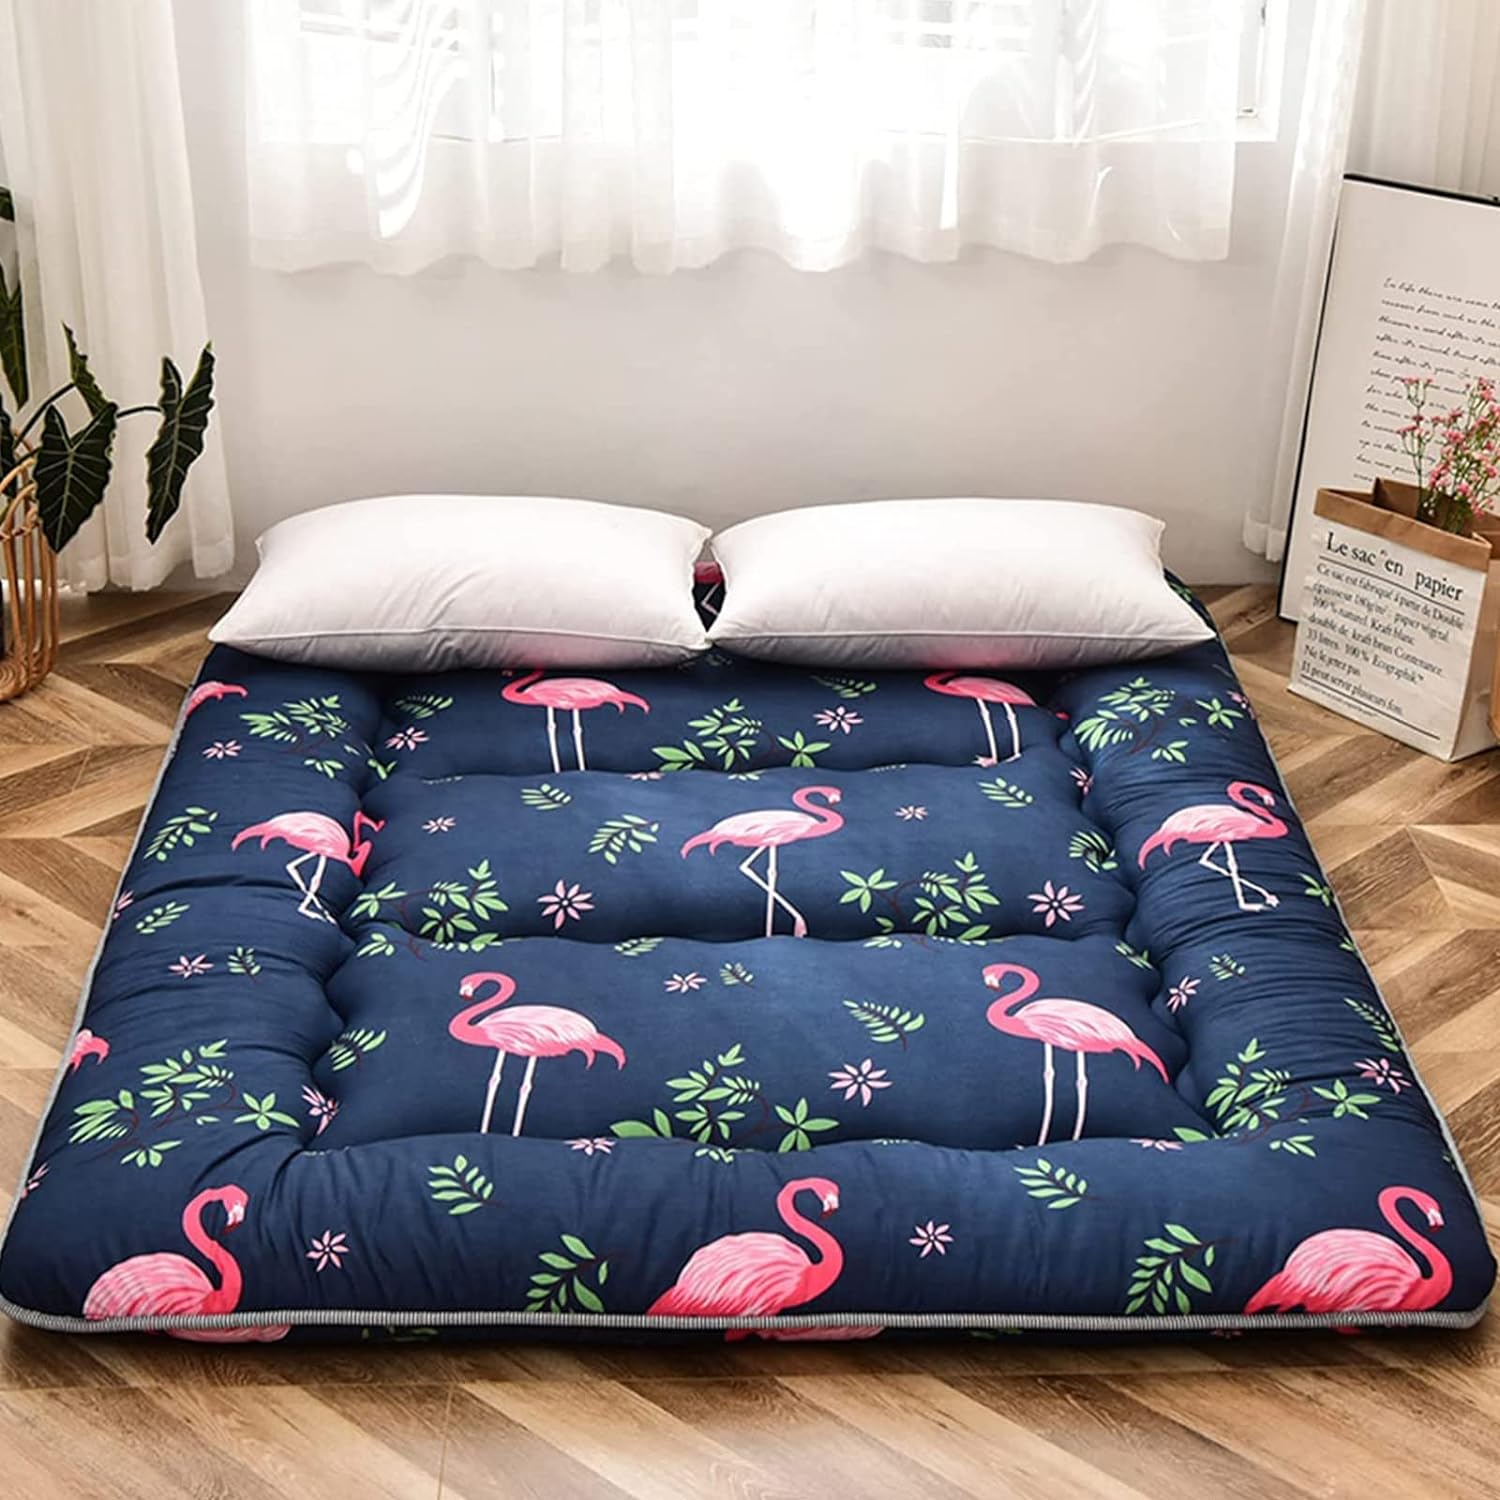 Colchón de futón japonés flamenco para dormir, cama japonesa plegable, -  VIRTUAL MUEBLES